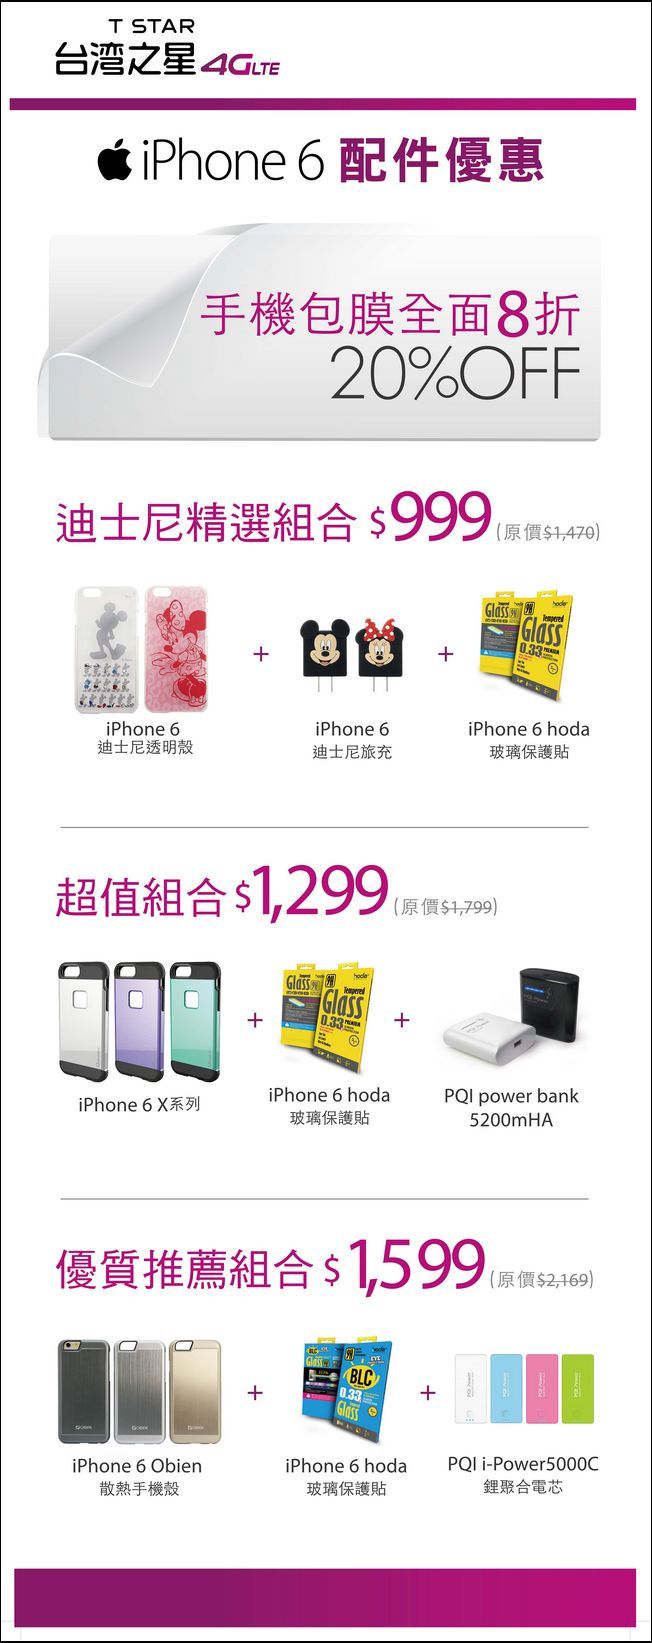 台灣之星iPhone 6首賣會配件專屬組合